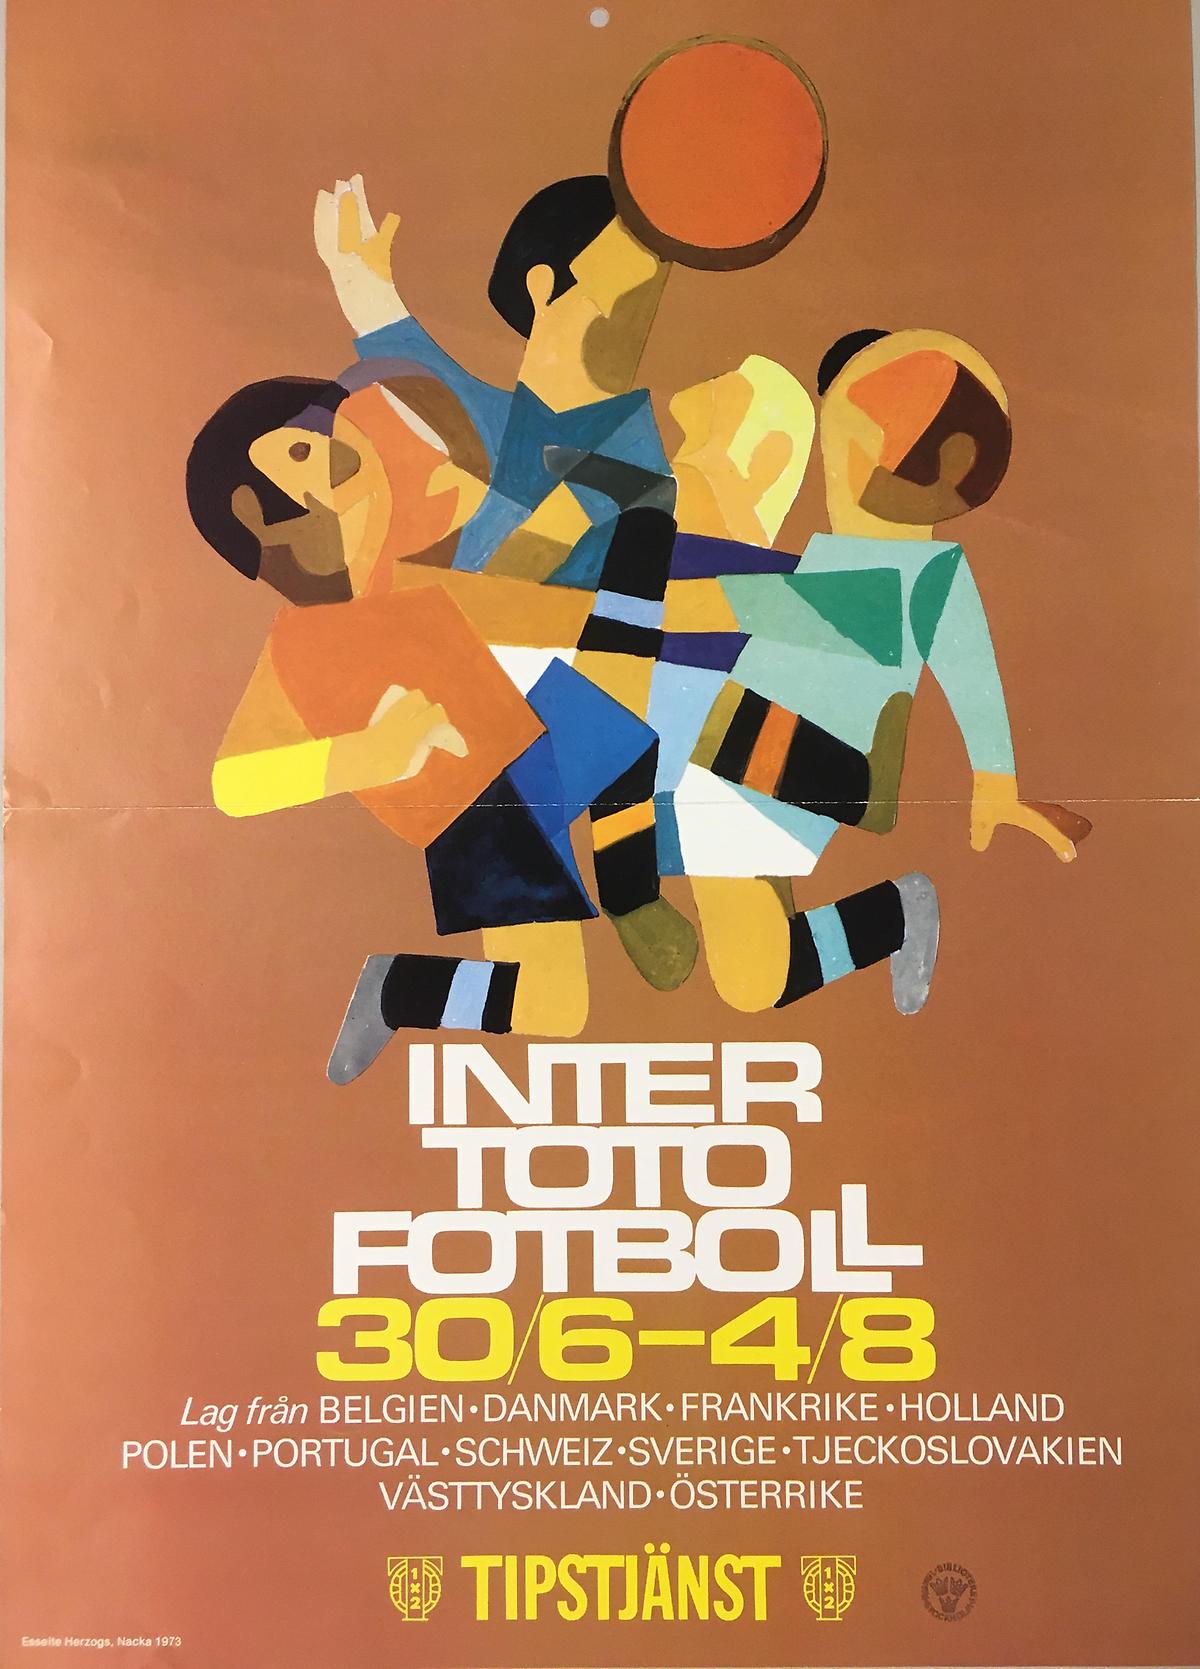 Inter toto fotboll 30/6 - 4/8. Tipstjänst 1973. Osignerad.